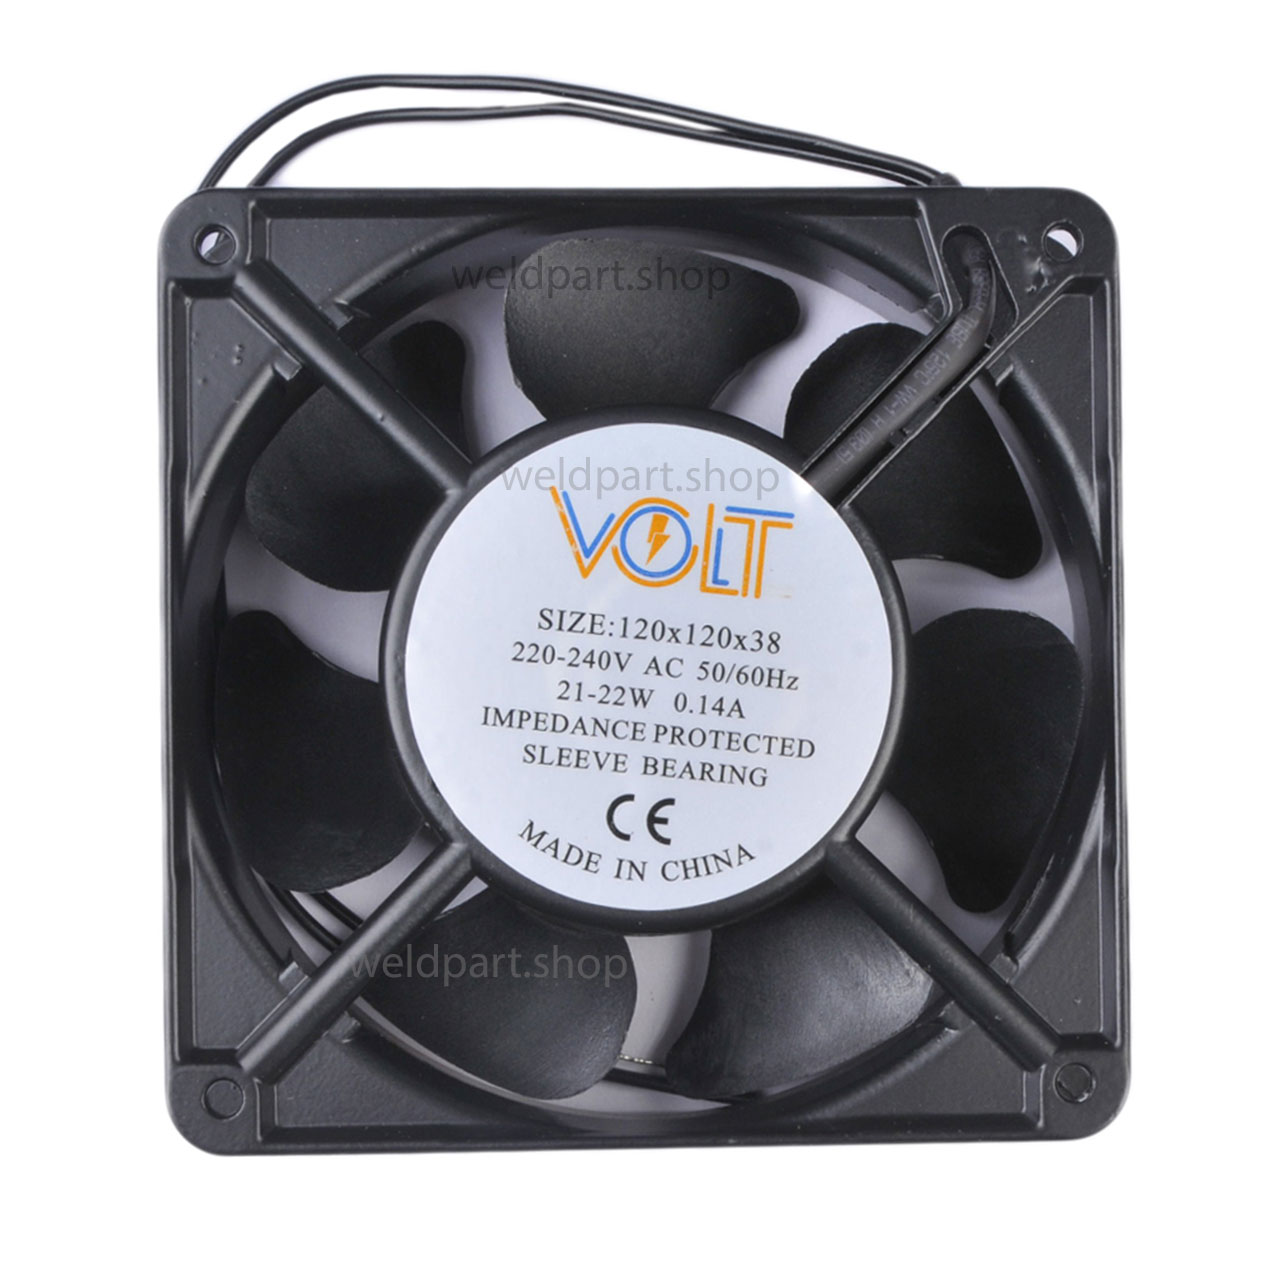 فن 12 در 12 سانتیمتری VOLT 230VAC Fan